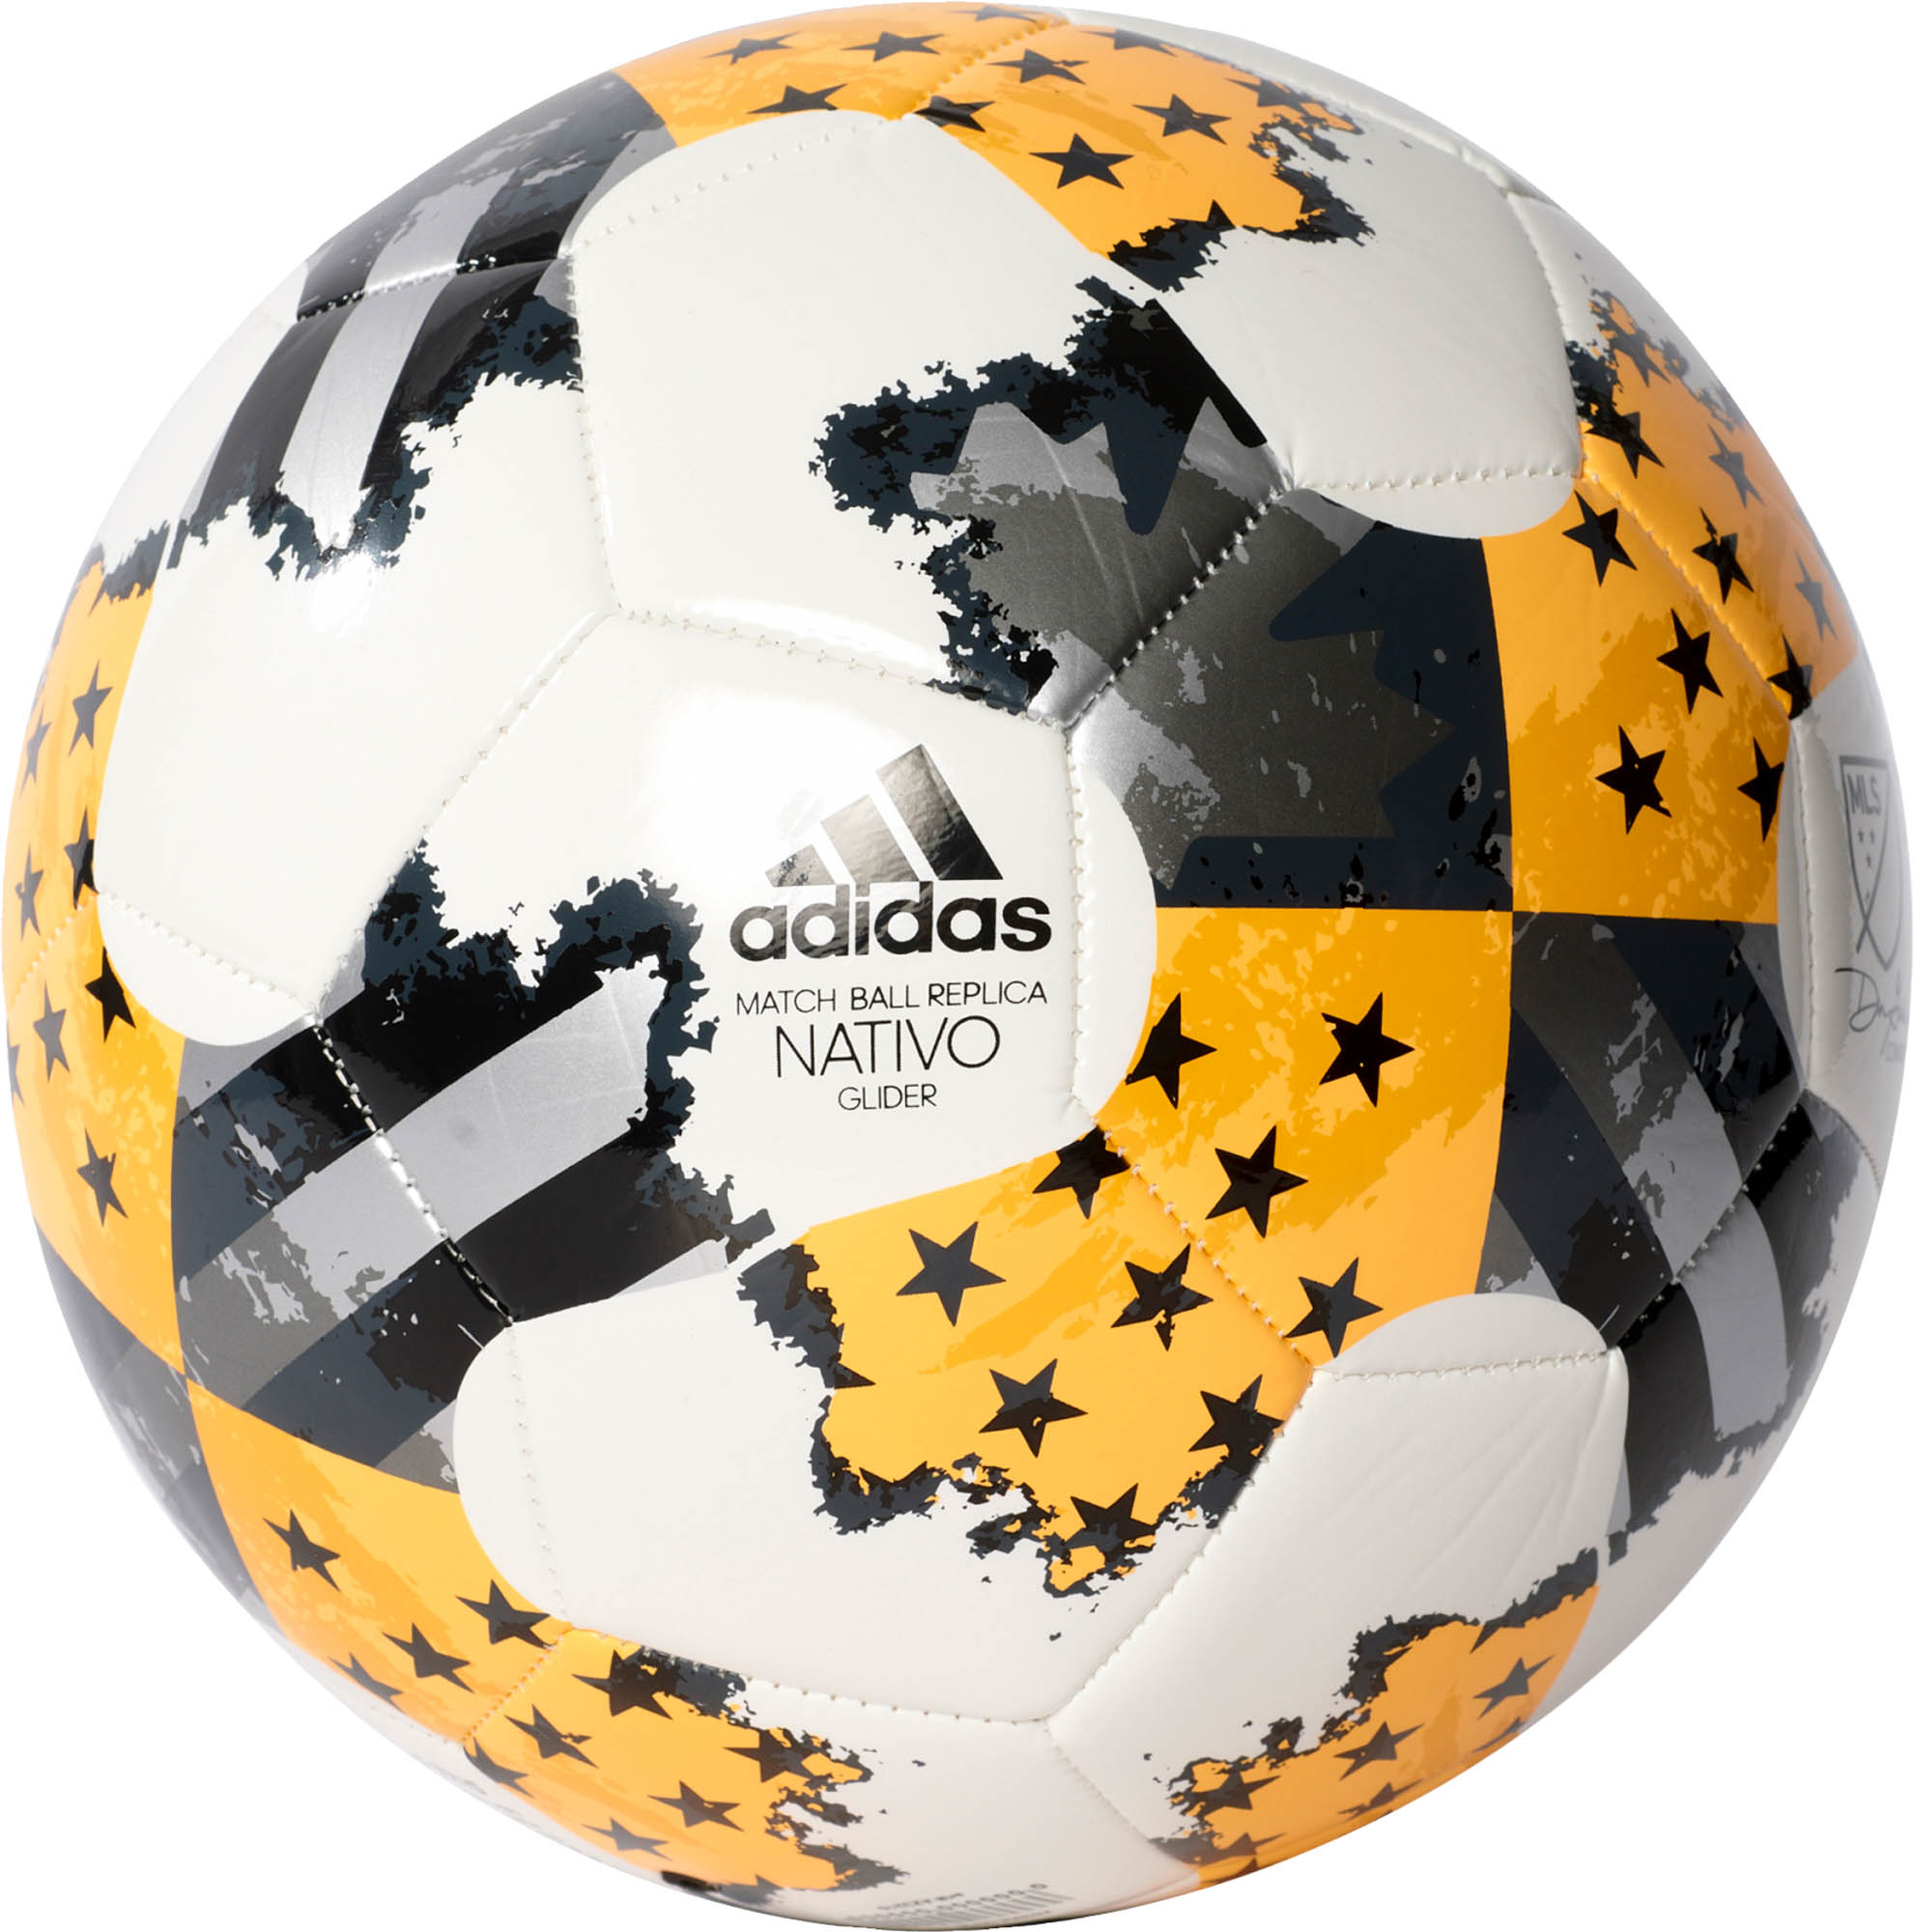 adidas 2018 mls glider soccer ball